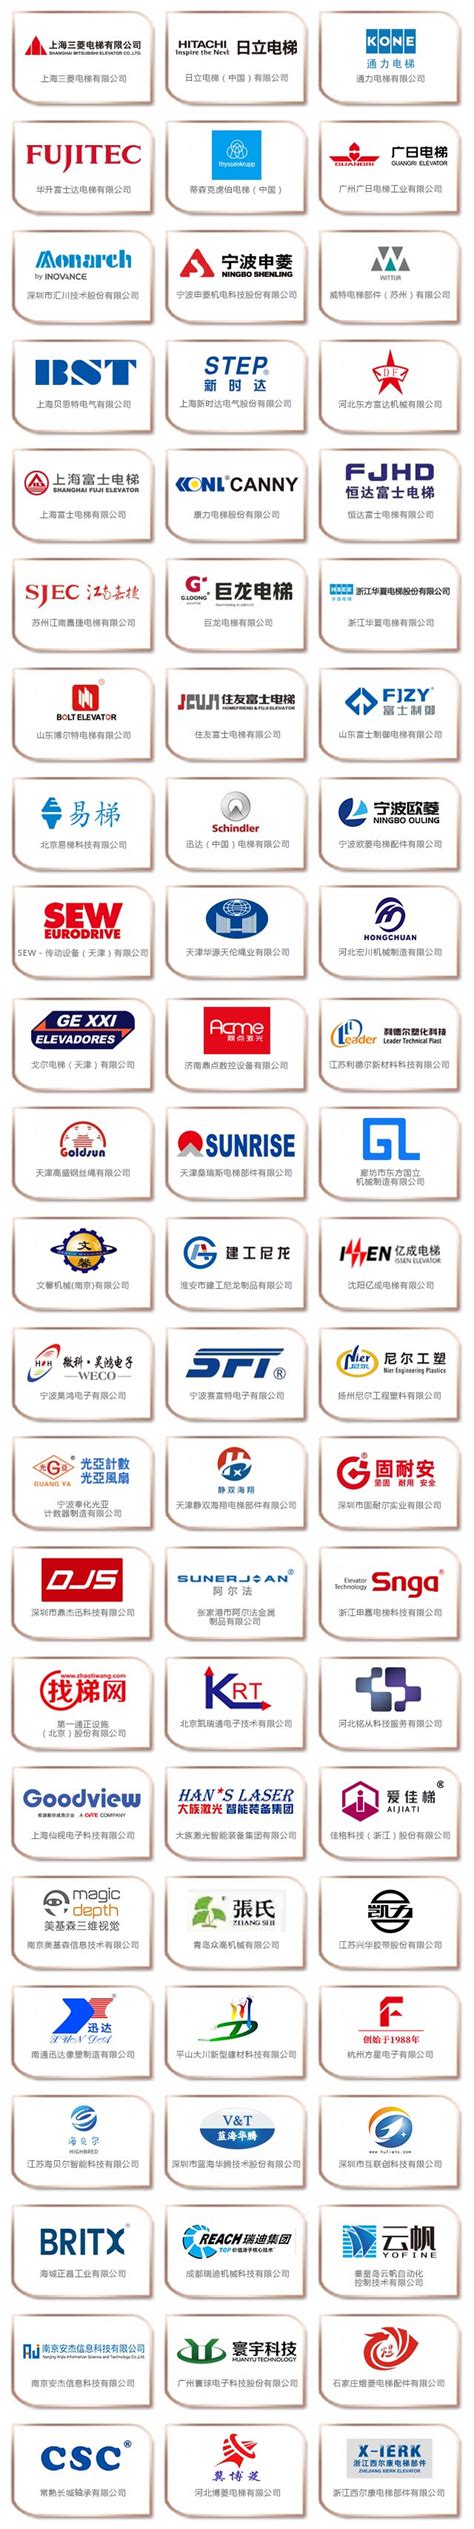 台州上市公司名单,业绩排名查询(2023年06月16日) - 南方财富网